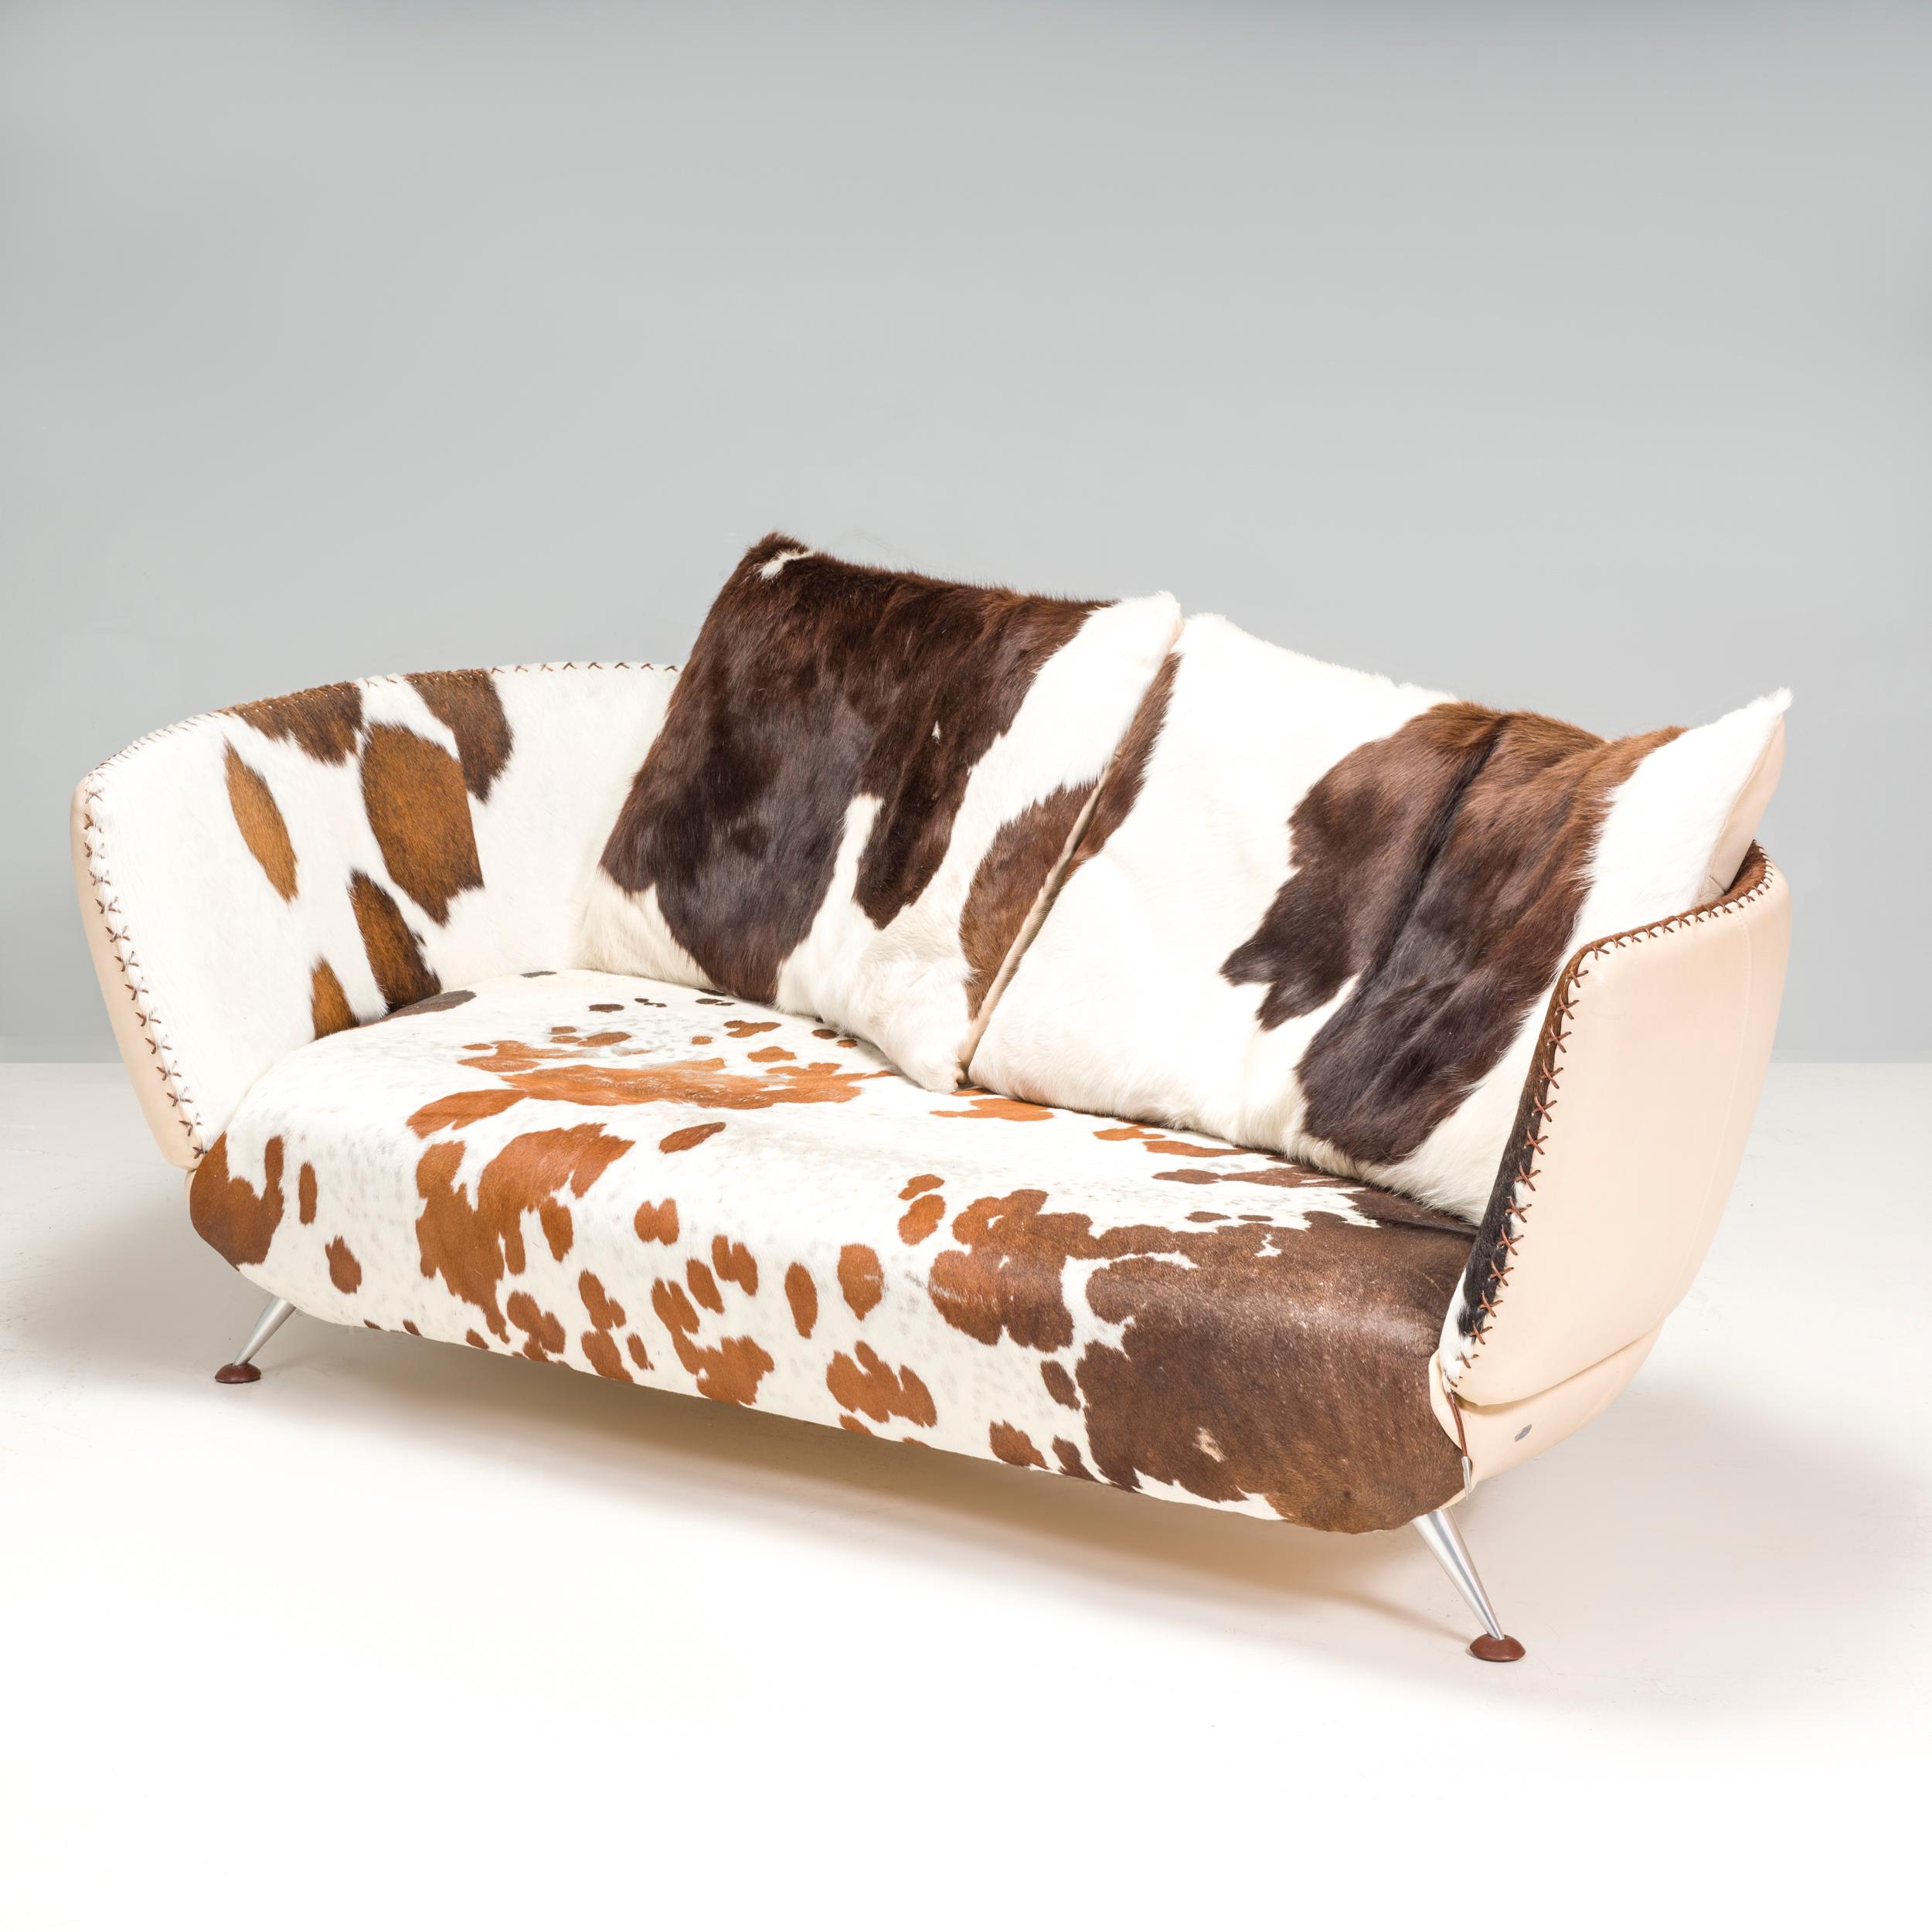 Das von Mathias Hoffman für De Sede entworfene De Sede DS-102 ist ein Dreisitzer-Sofa mit einem wunderschönen Ponyfell in verschiedenen Farbtönen. Der cremefarbene Lederrücken des Sofas ergänzt die braune Musterung der Haut und trägt zum modernen